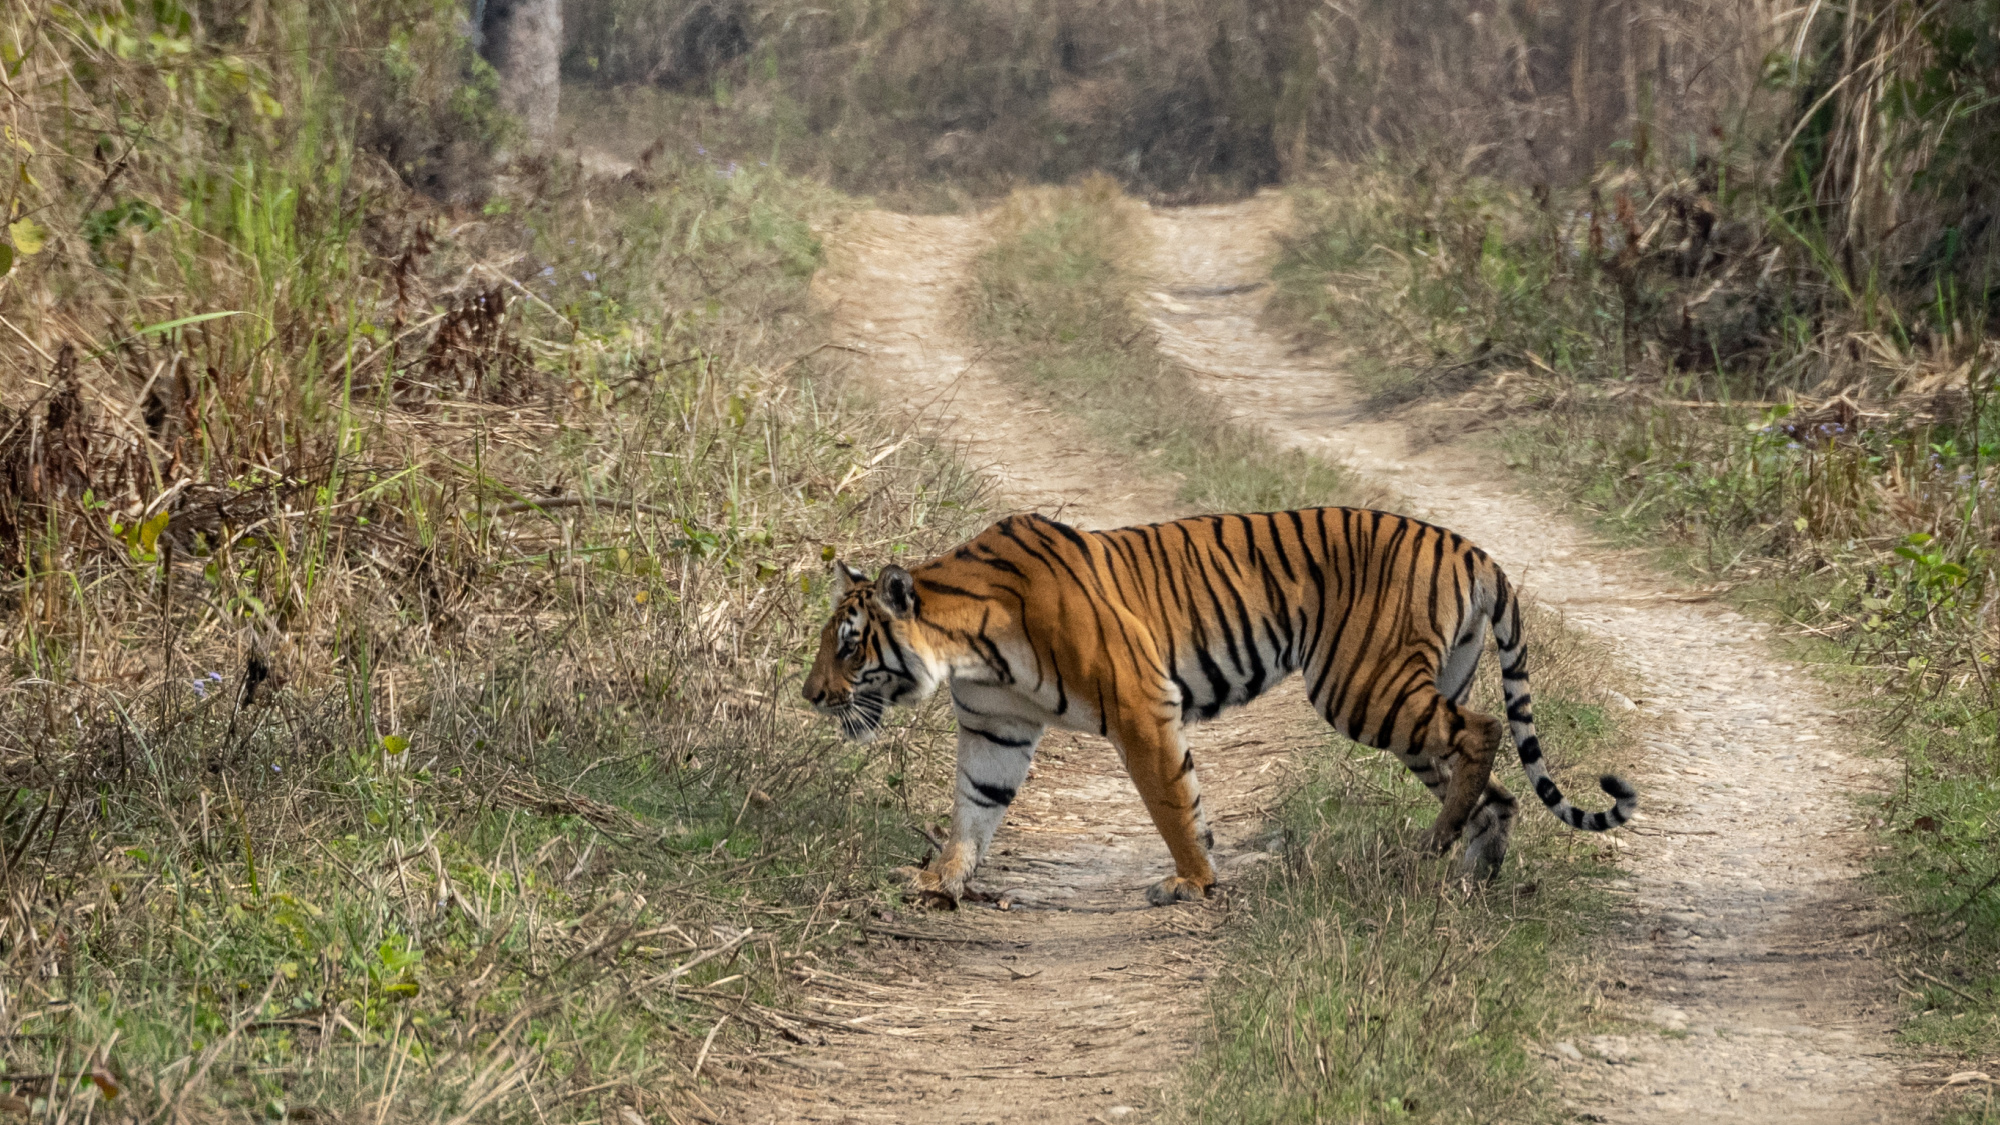 Tiger walking along road in Nepal